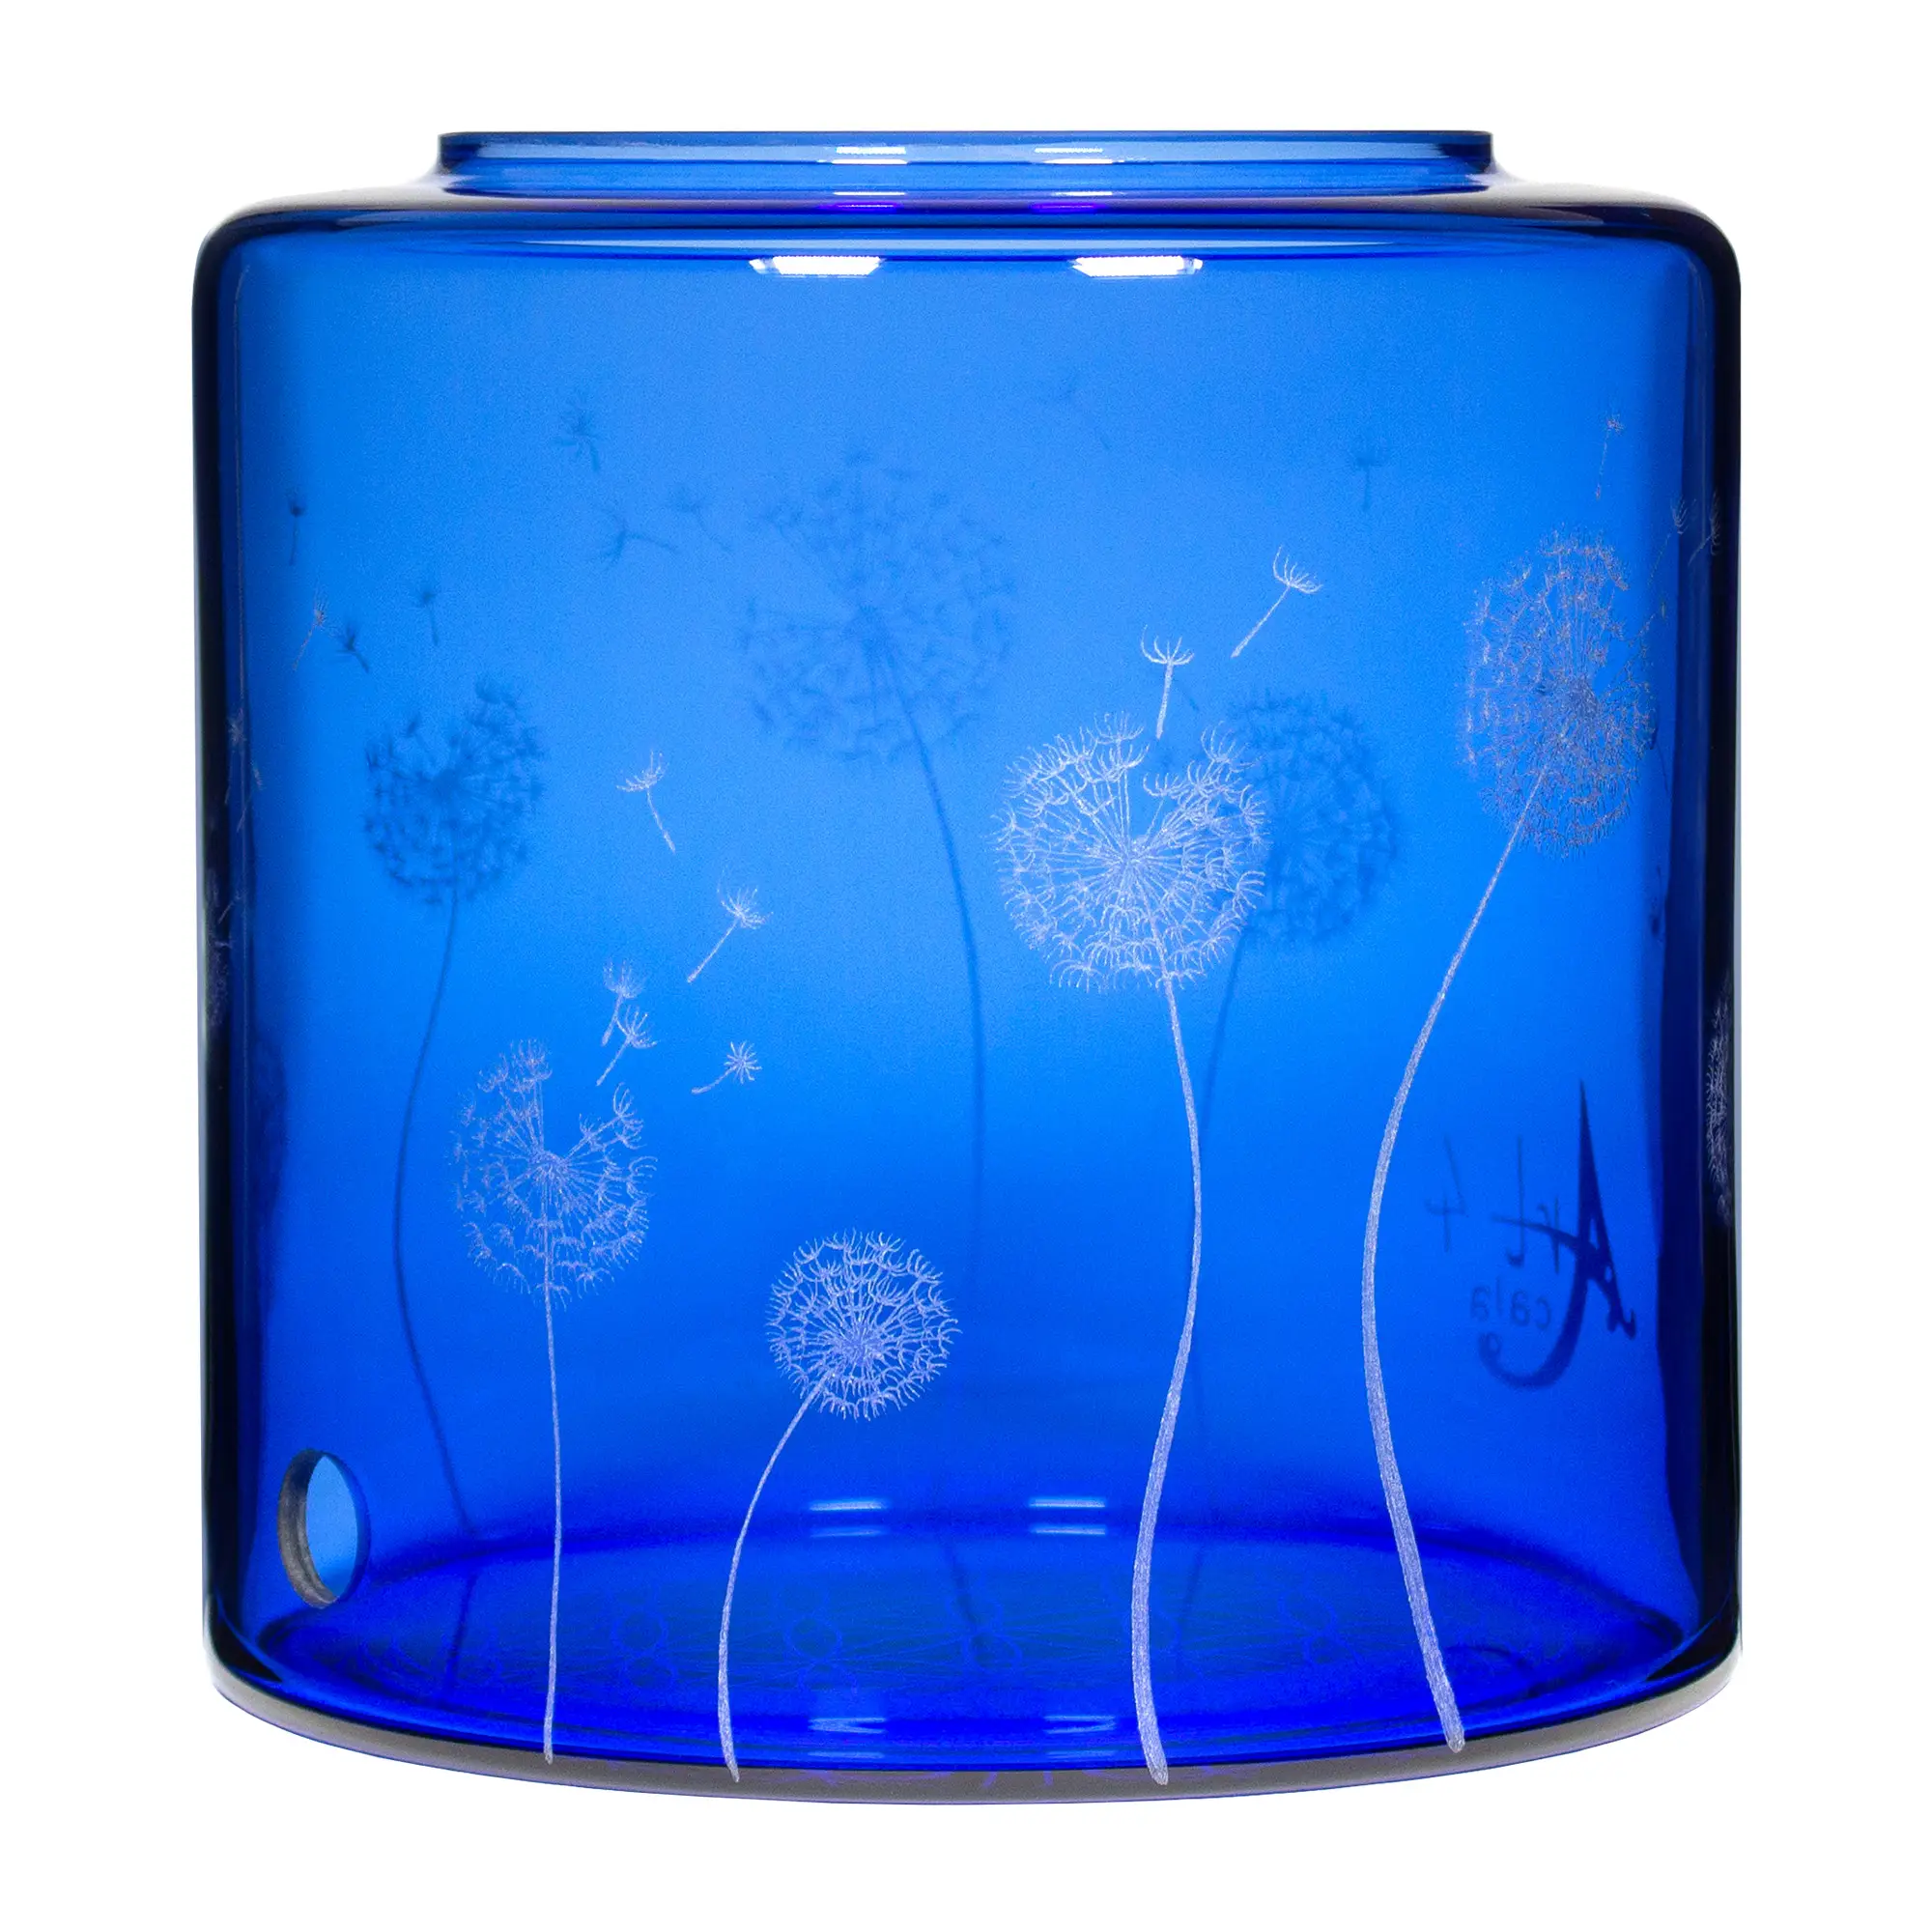 Ein Acala Wasserfilter Mini mit einer Handgravur. Die Gravur zeigt, auf blauem Glas, ganz viele Pusteblumen und einige samen die aus der Pusteblume herausfliegen.Ansicht von rechts.